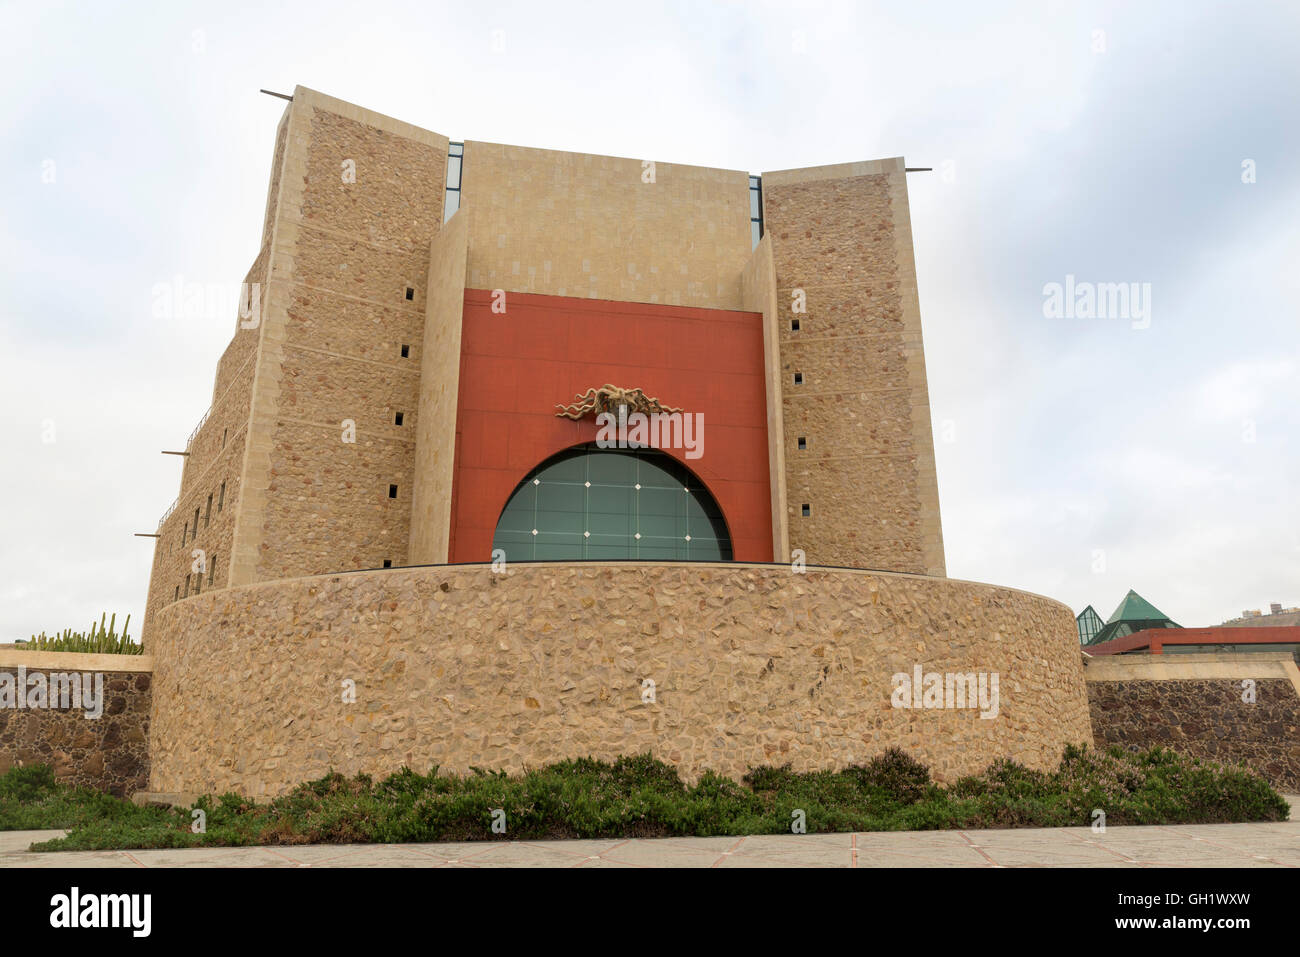 LAS PALMAS DE GRAN CANARIA, ESPAGNE - 3 août 2016 : Auditorium Alfredo Kraus est situé à Las Palmas constituant l'un des m Banque D'Images